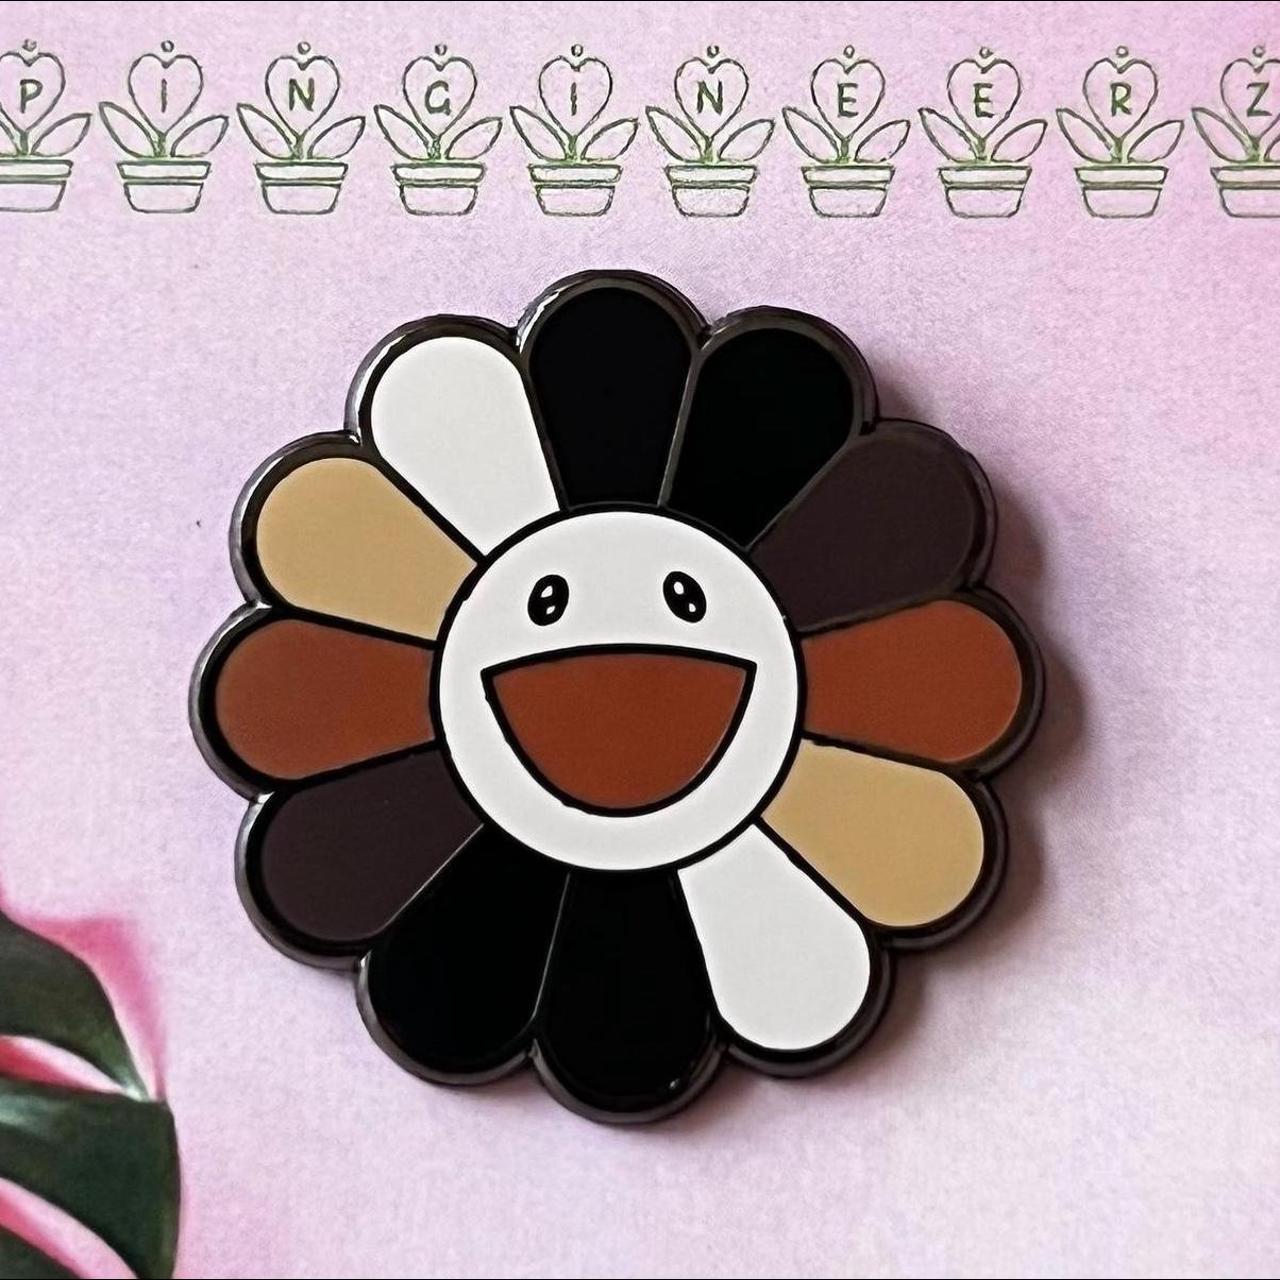 Takashi Murakami Kaikaikiki plush flower keychain - Depop